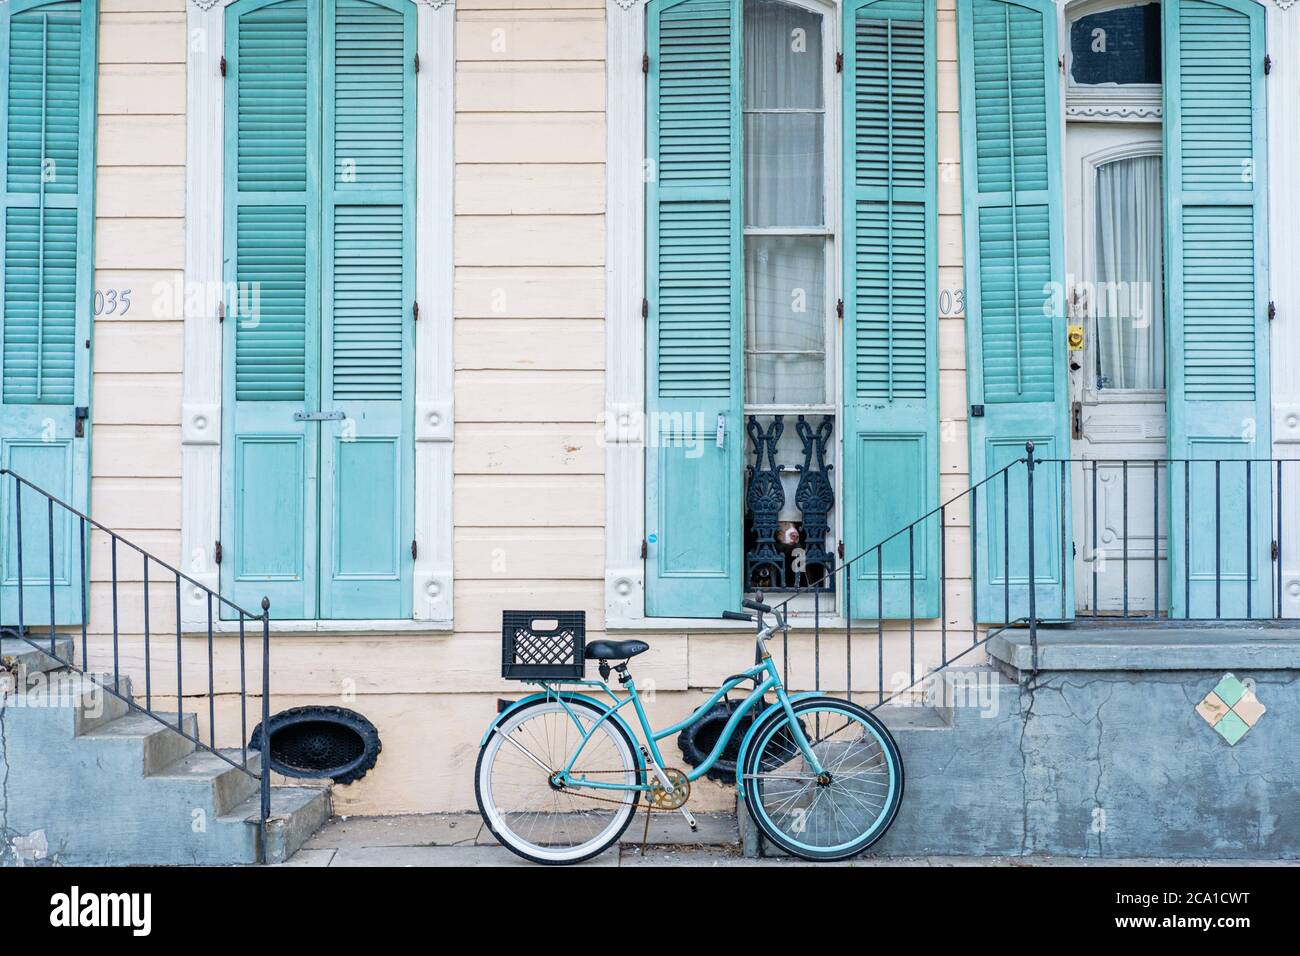 La Nouvelle-Orléans, Louisiana/USA - 7/30/2020: Maison du quartier français en bleu pastel avec vélo et chiens à la fenêtre Banque D'Images